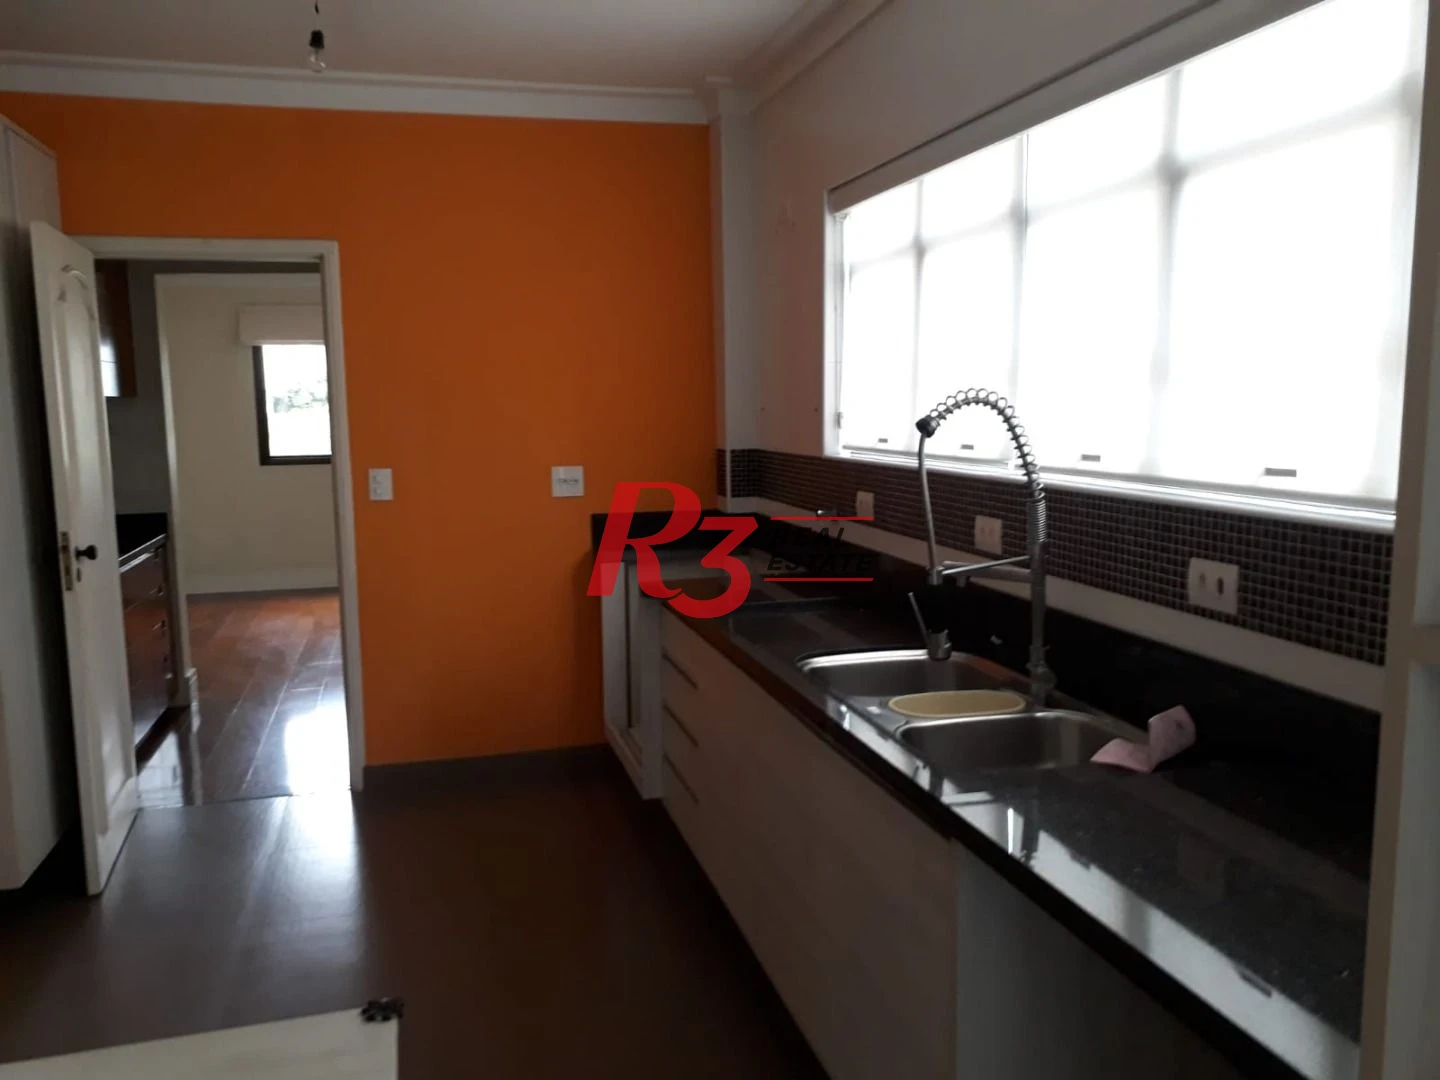 Apartamento com 3 dormitórios à venda, 211 m² por R$ 1.600.000,00 - Boqueirão - Santos/SP